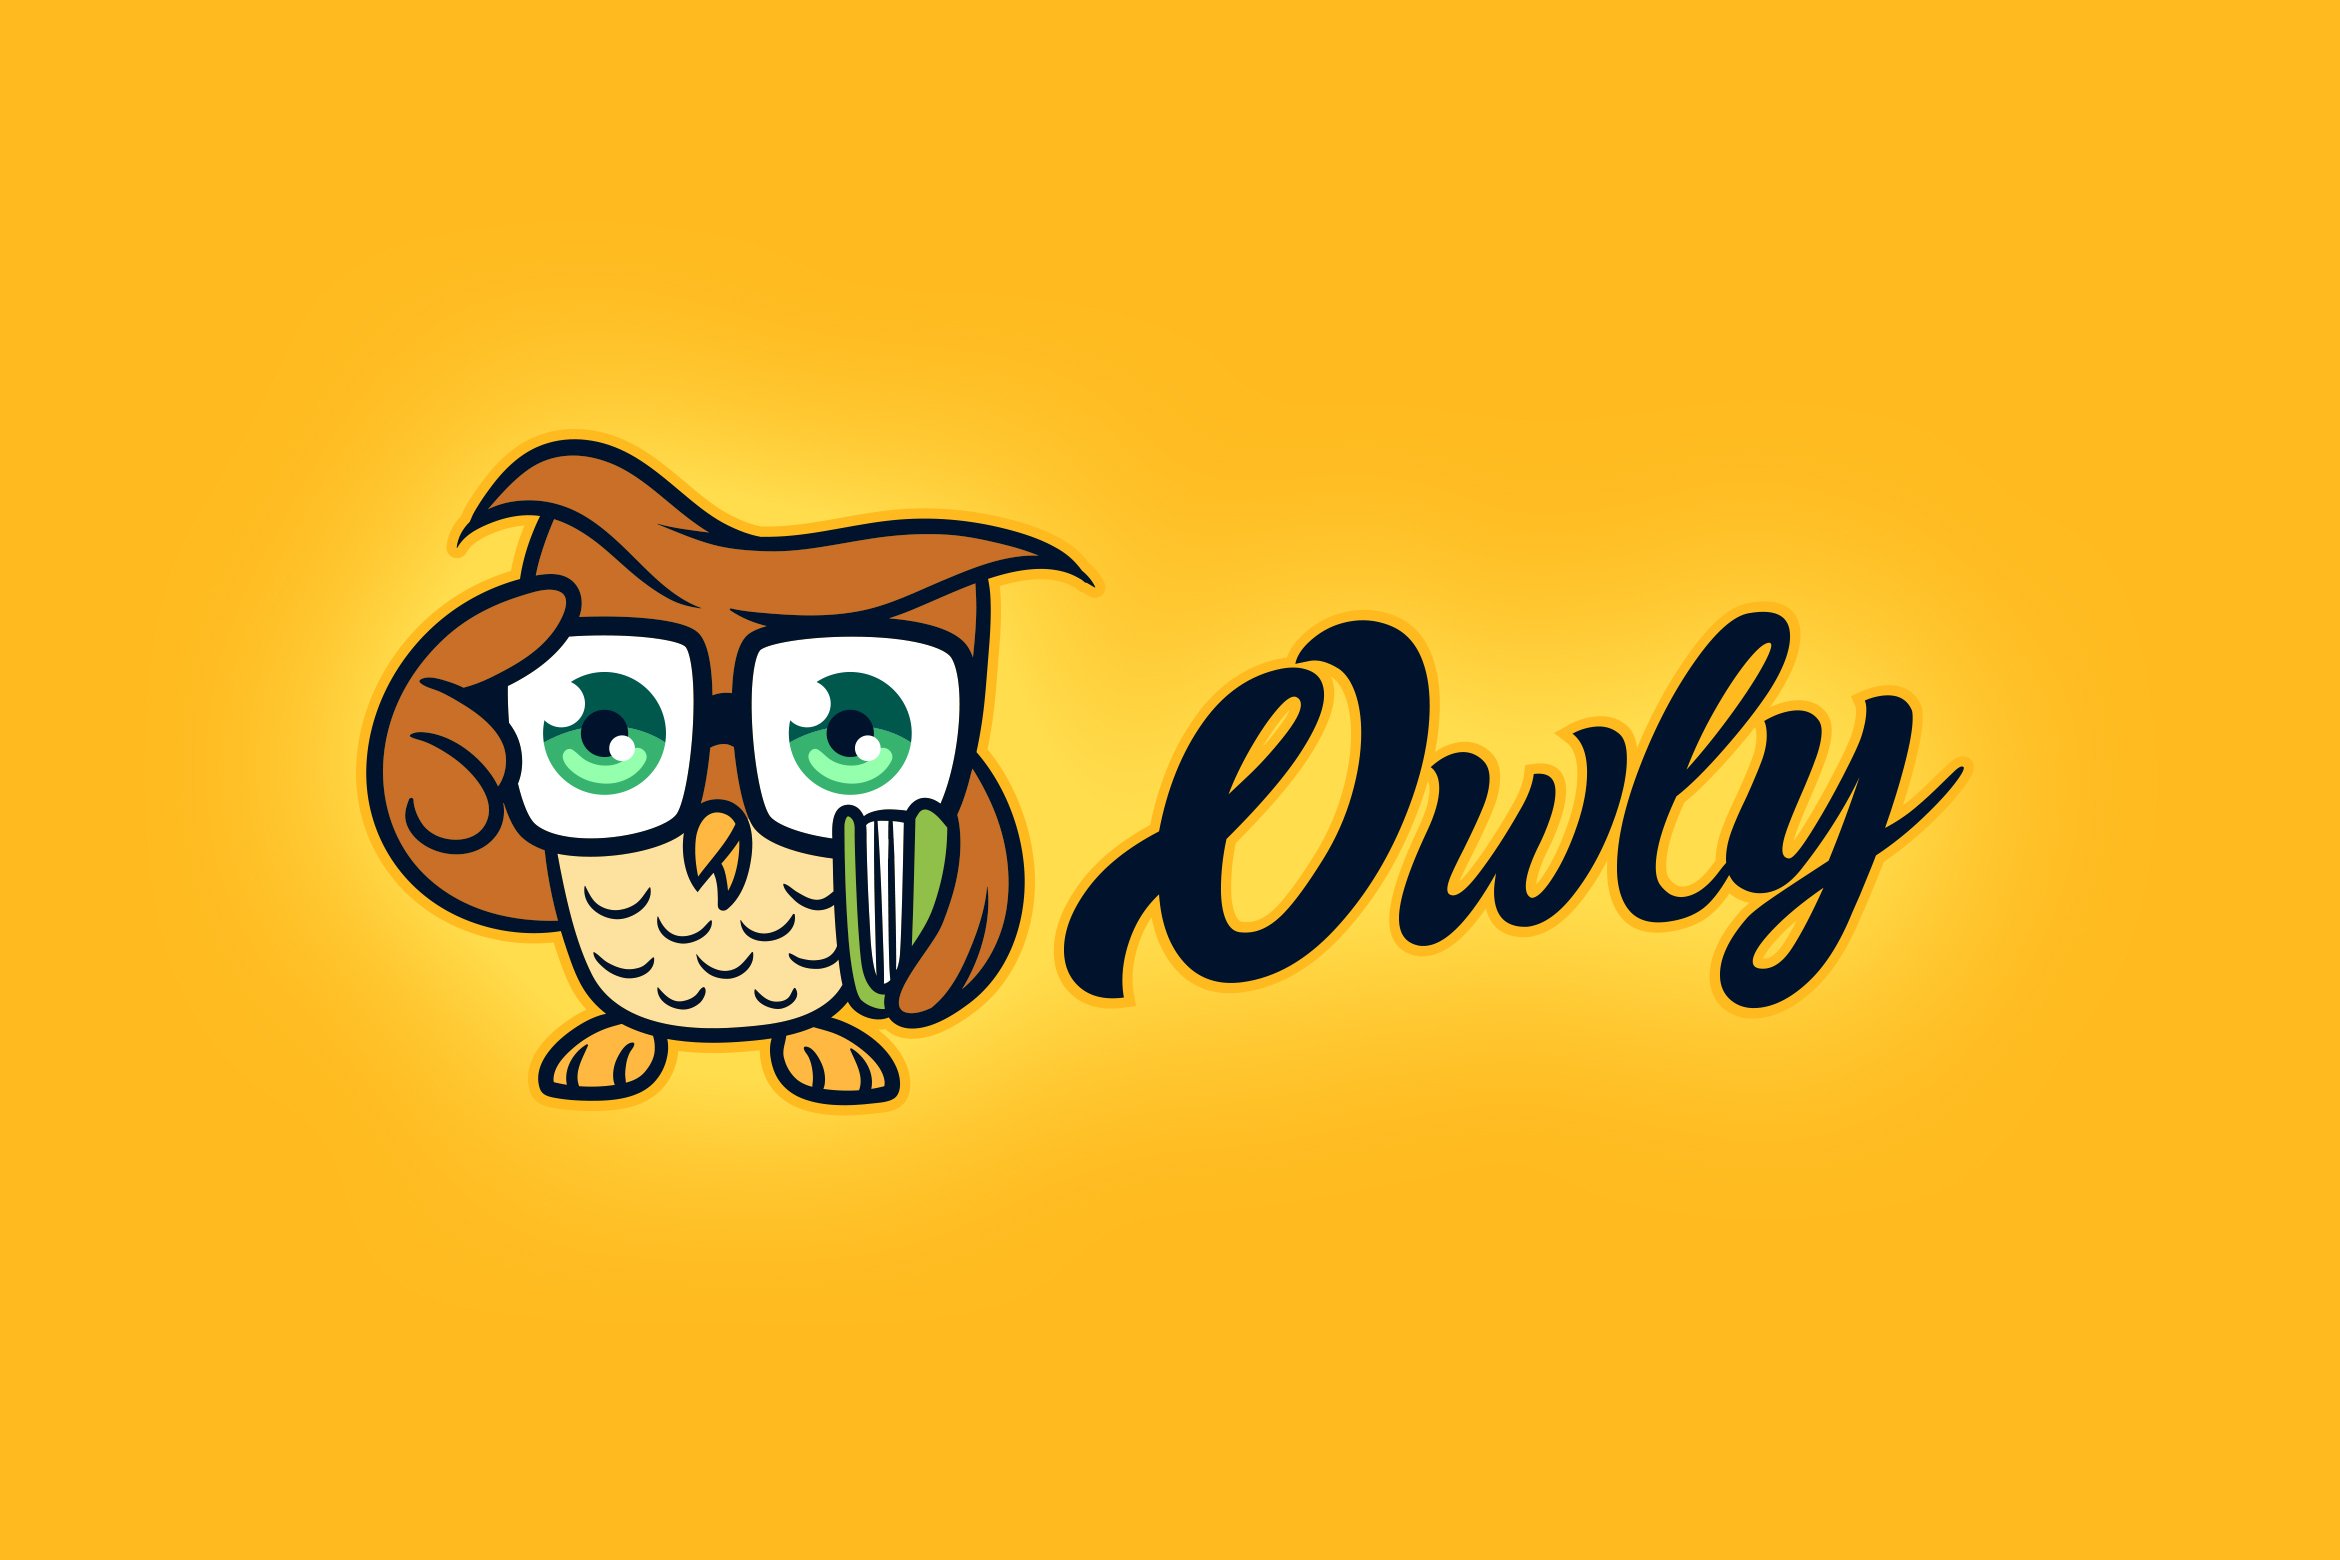 Nerd Owl Logo cover image.